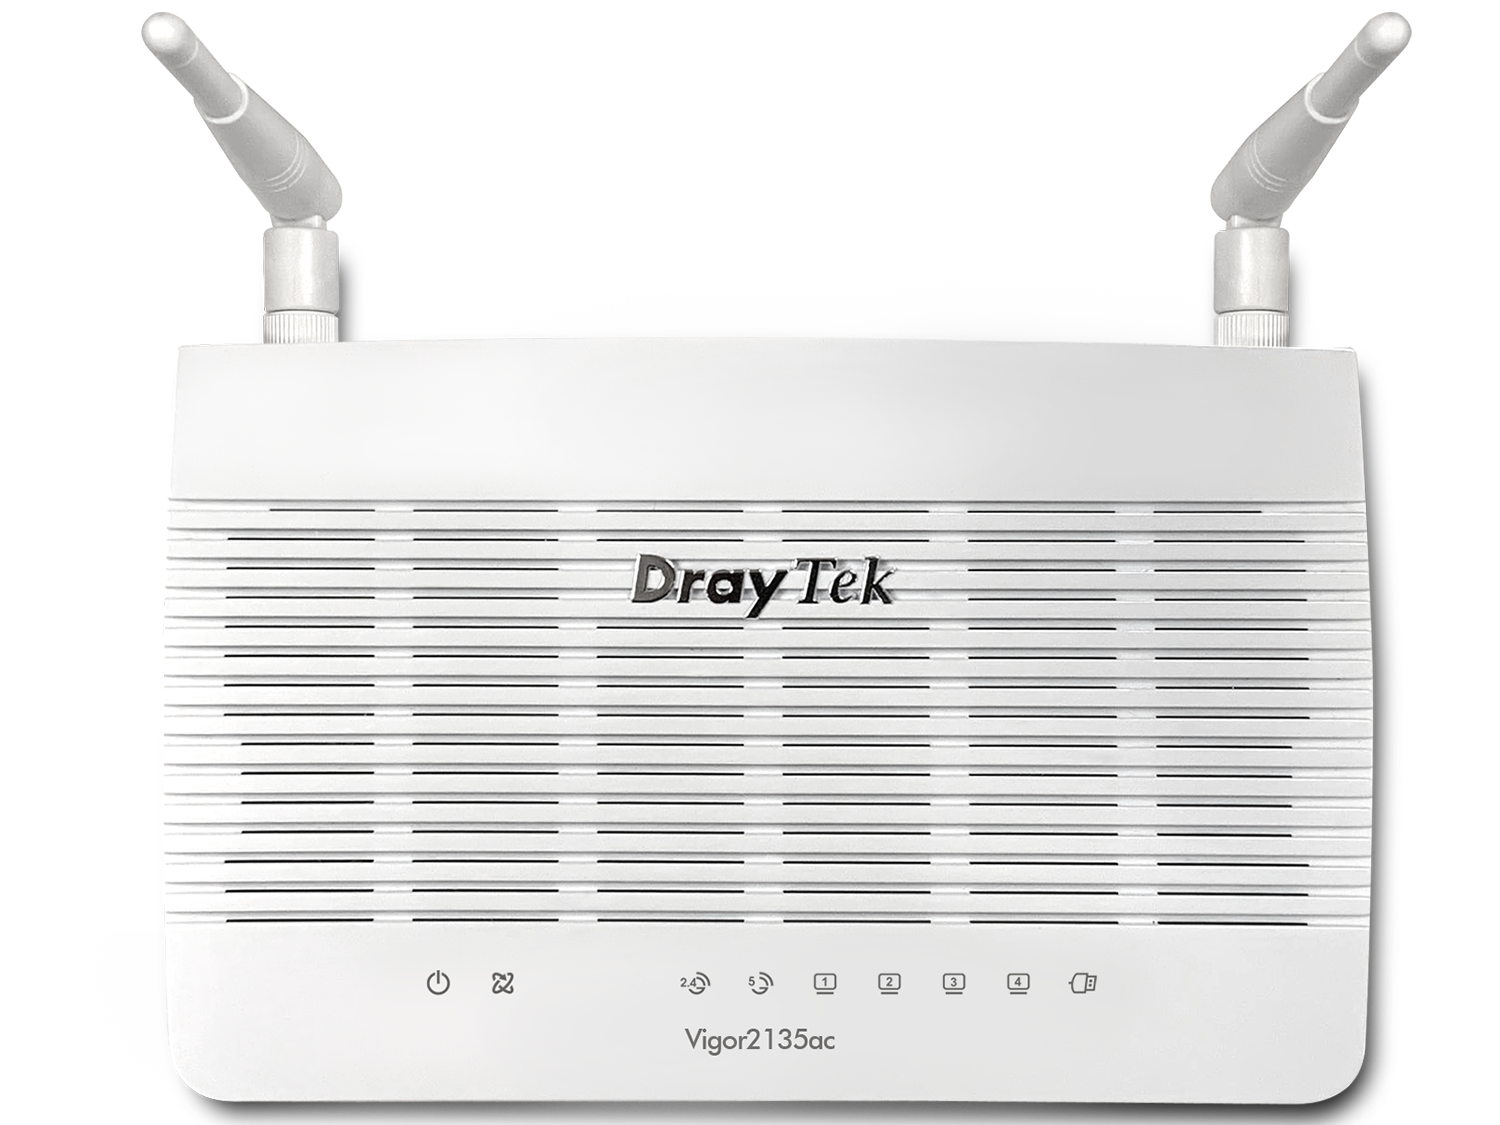 DrayTek Vigor2135ac - Gigabit Broadband Single-WAN 802.11ac Router for Home/SOHO